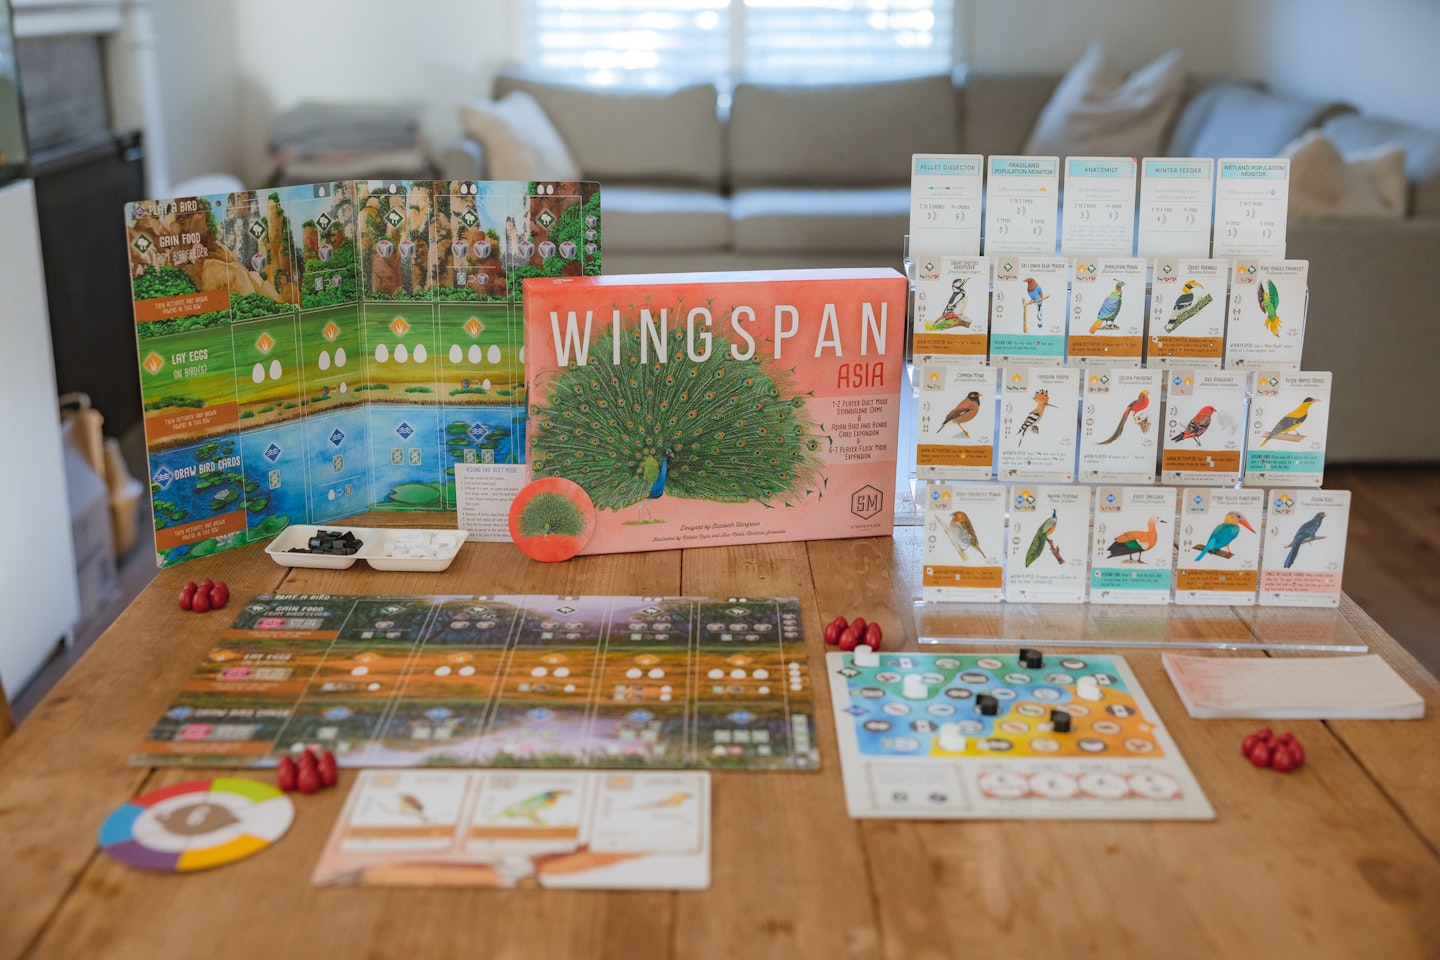 Wingspan Asia board game